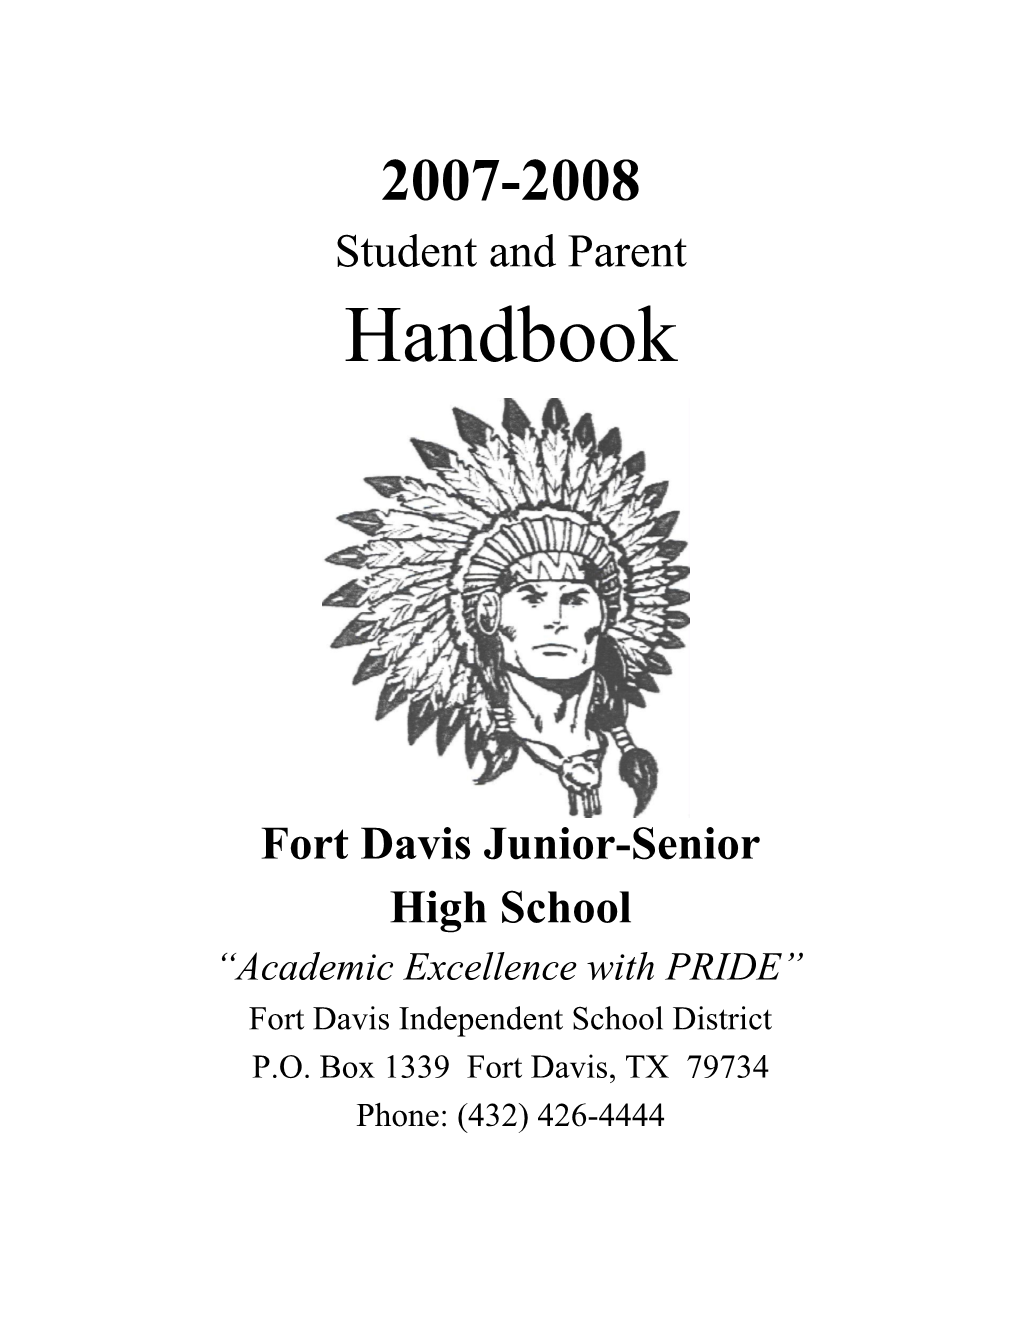 Fort Davis Junior-Senior